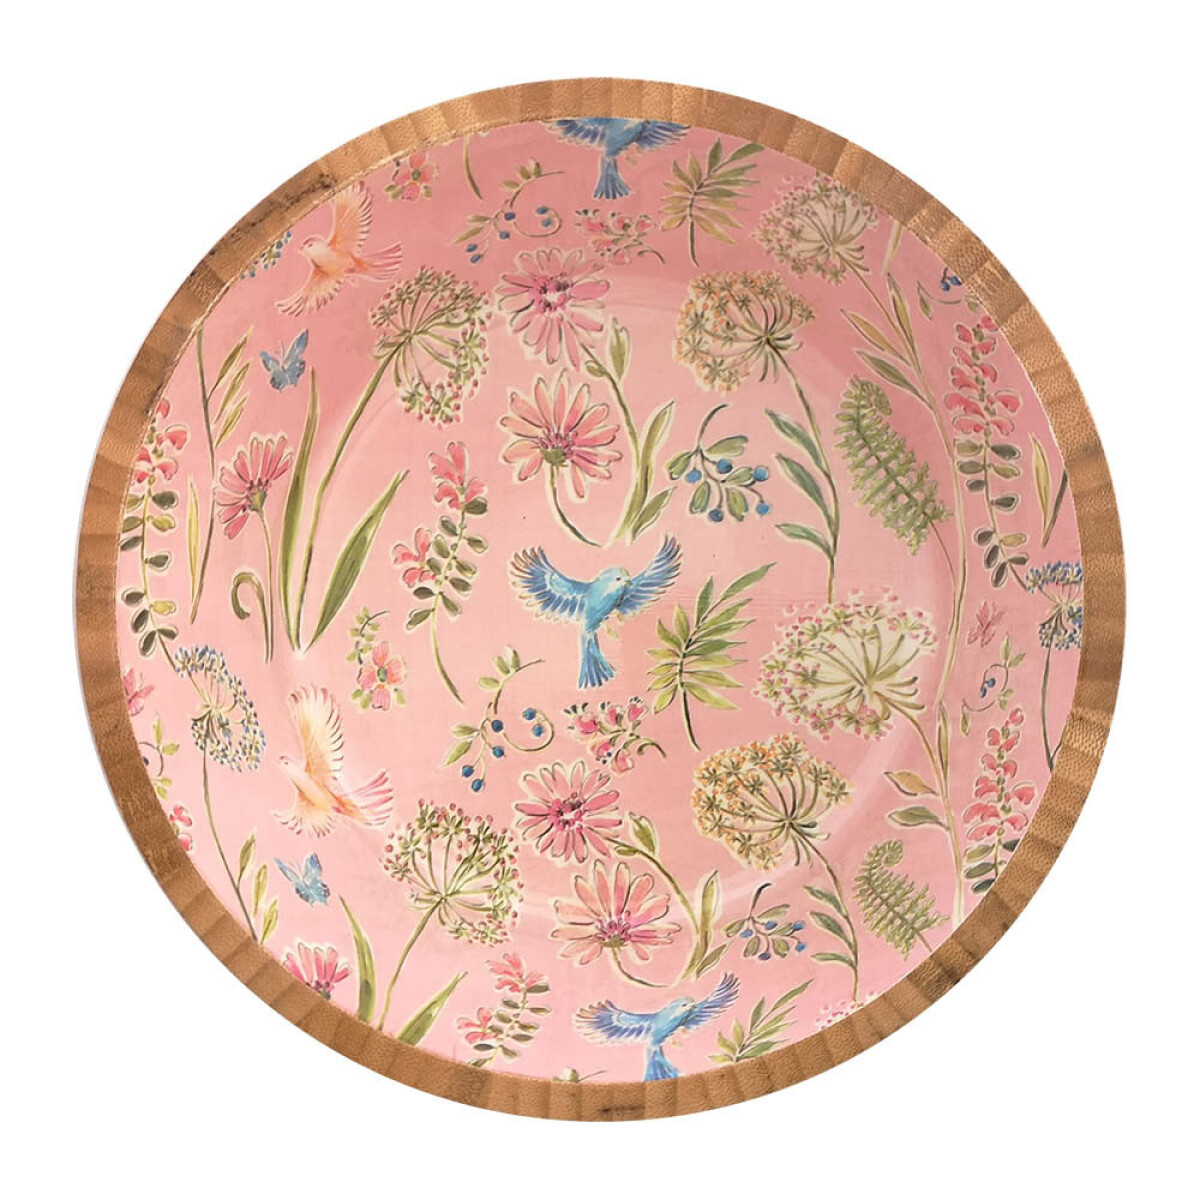 Bowl de Madera de 25 cm - Varios Diseños - Pajaros Rosa 